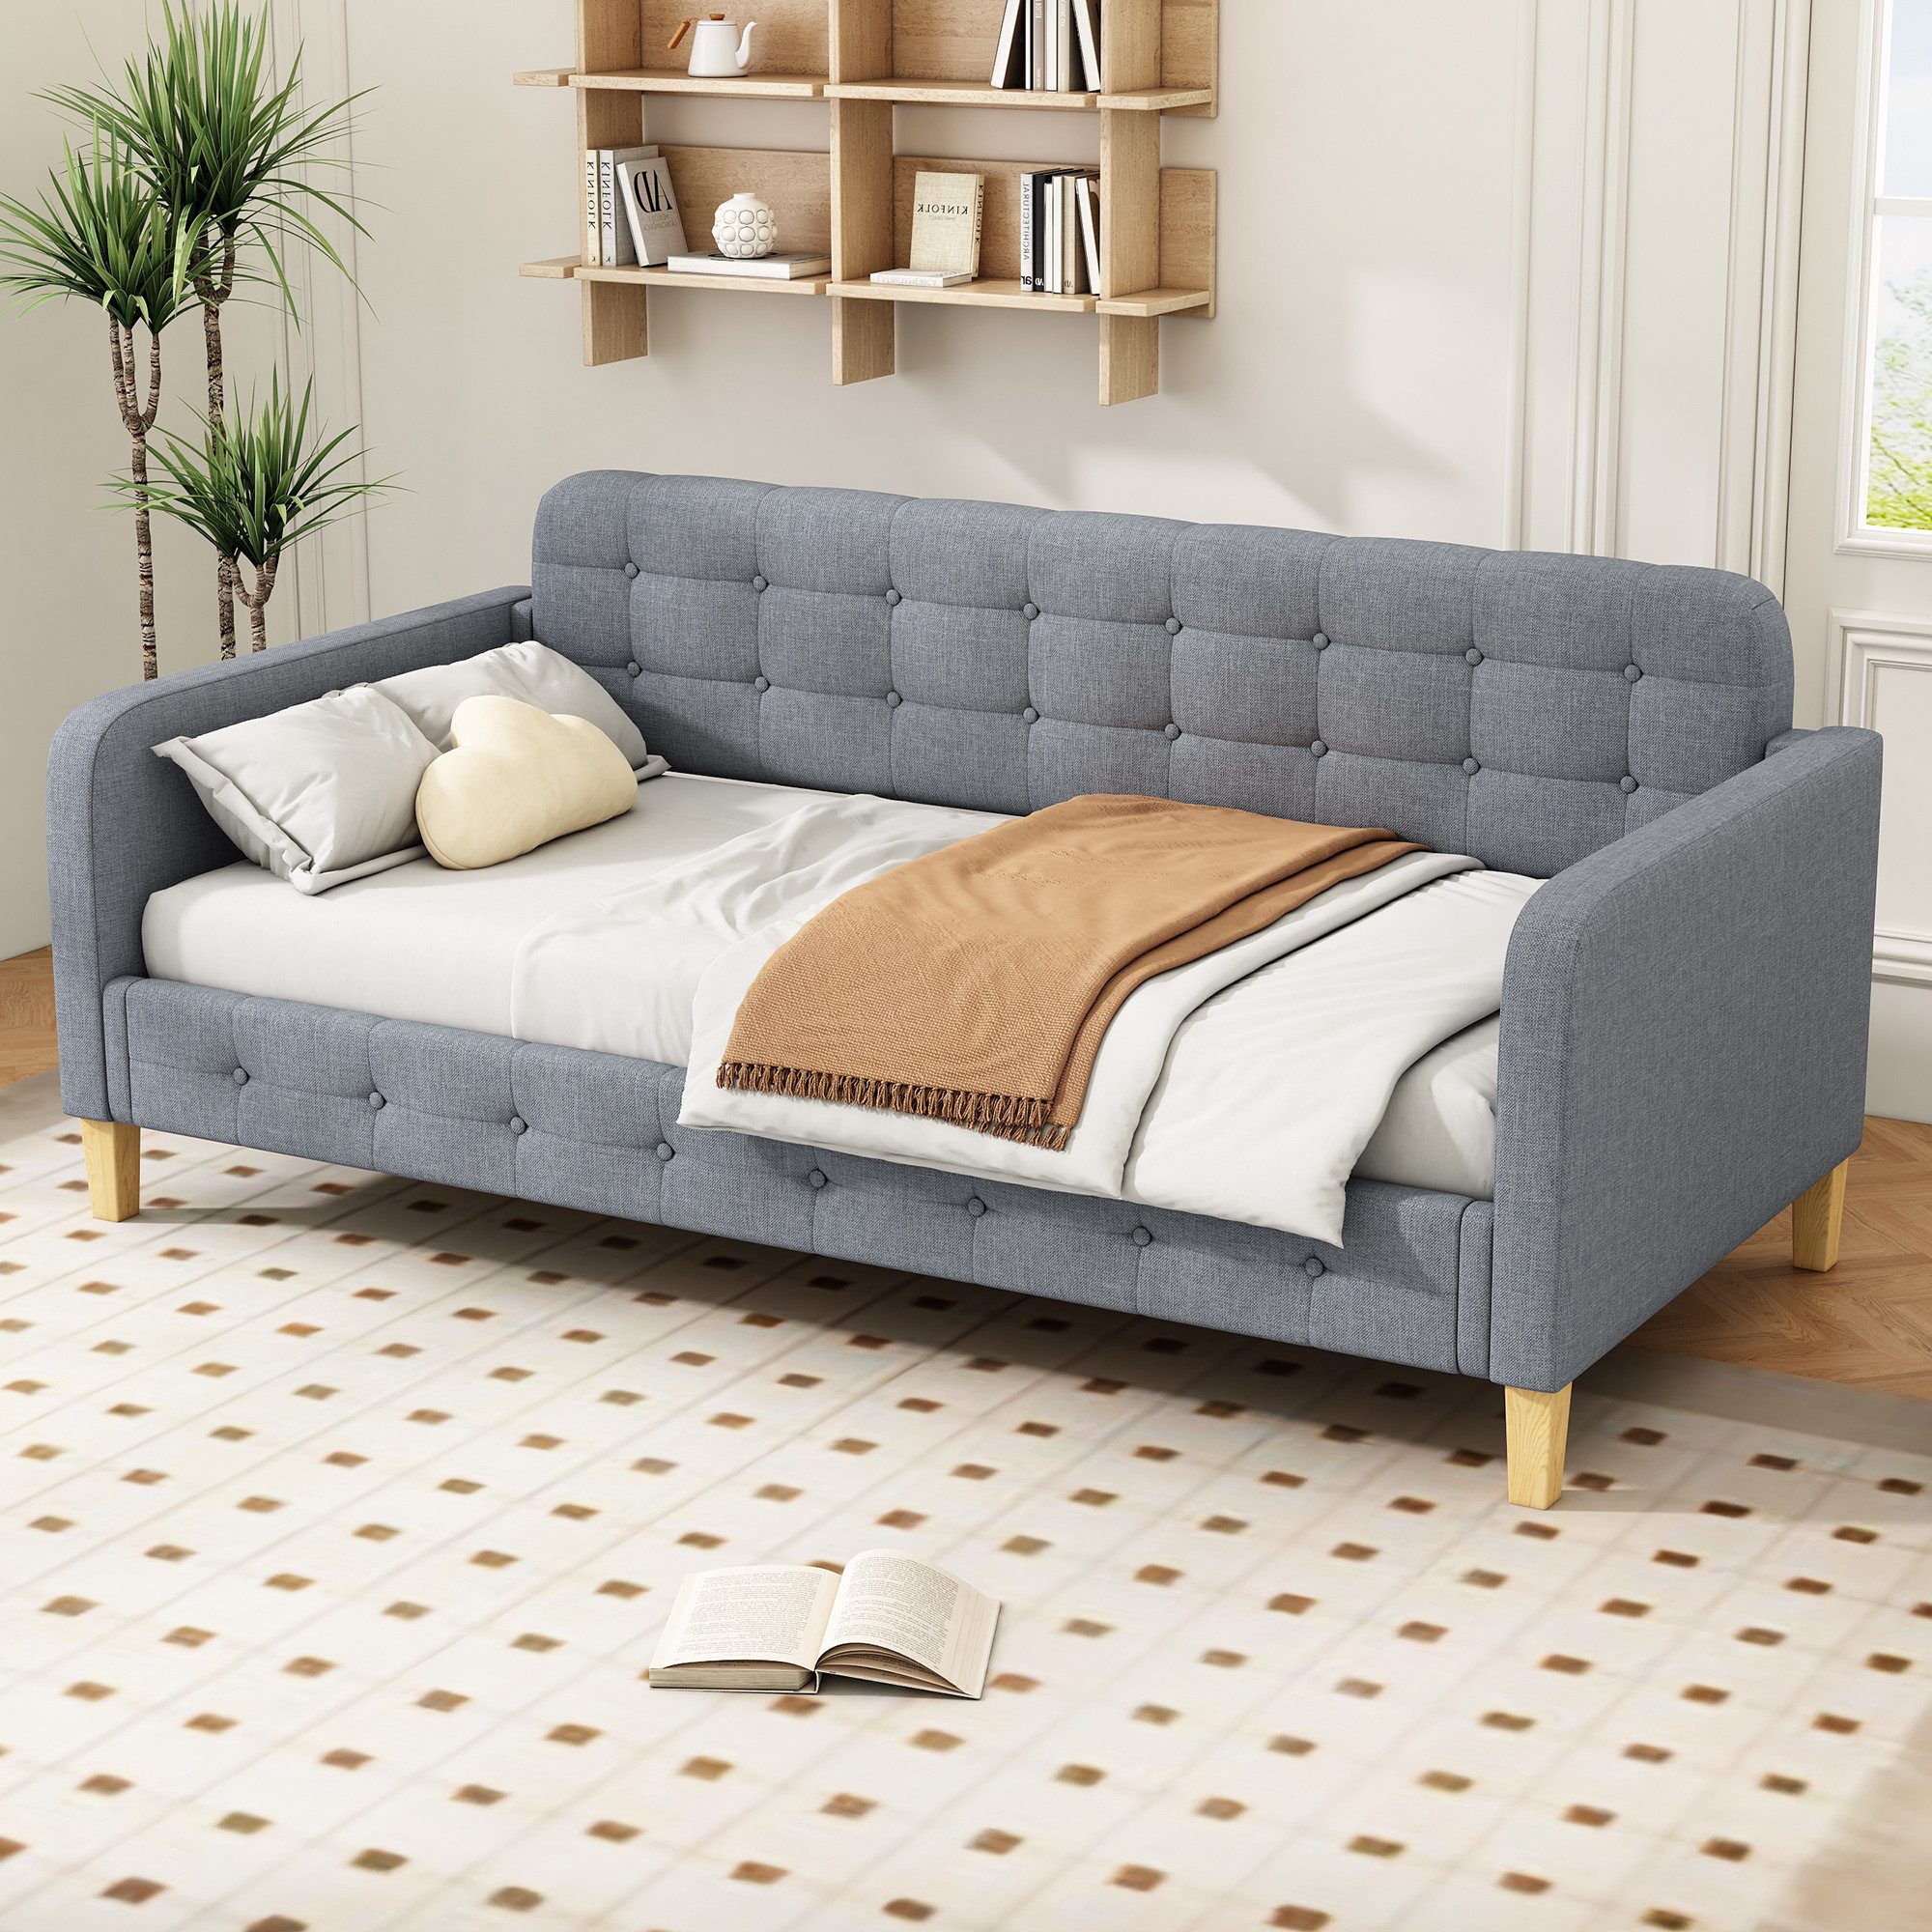 Fangqi Schlafsofa 90 x 200cm Schlafsofa, modernes Sofa, Knopfpolsterung,Linen, Einfacher Wechsel zwischen Sofa und Einzelbett